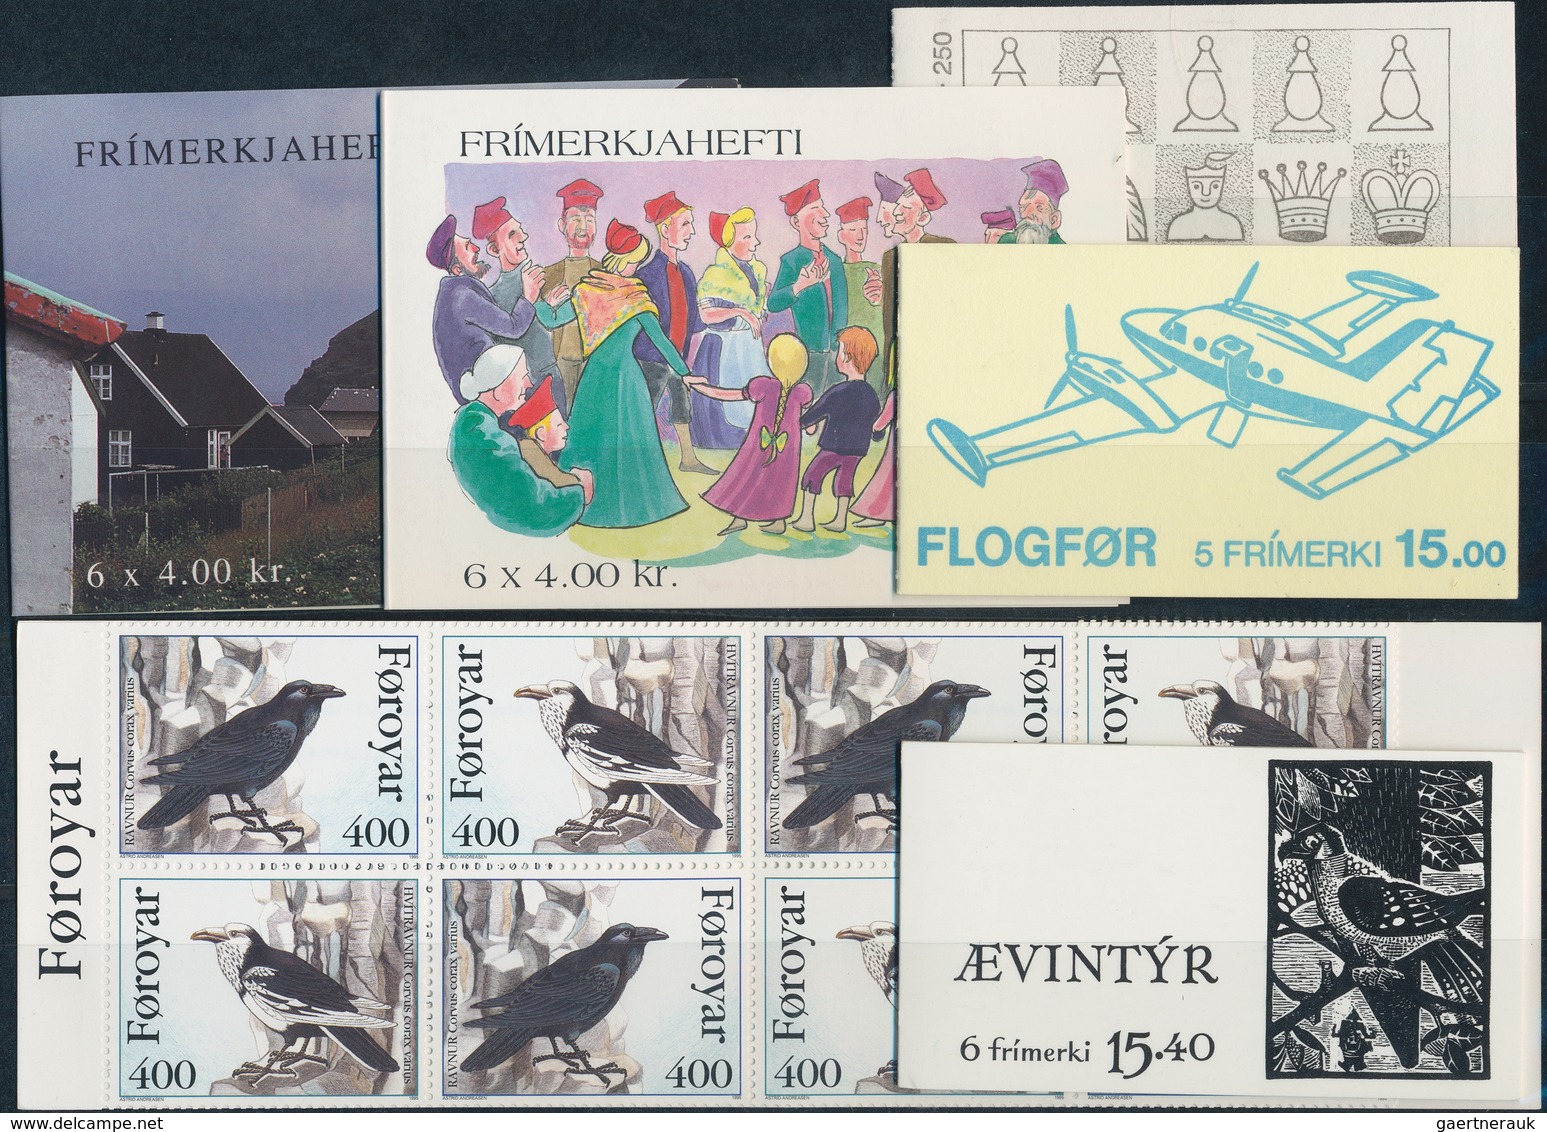 Dänemark - Färöer - Markenheftchen: 1983/1995, Nice Lot Of Booklets, Contains Mi.nr. MH 1/10 In Foll - Färöer Inseln